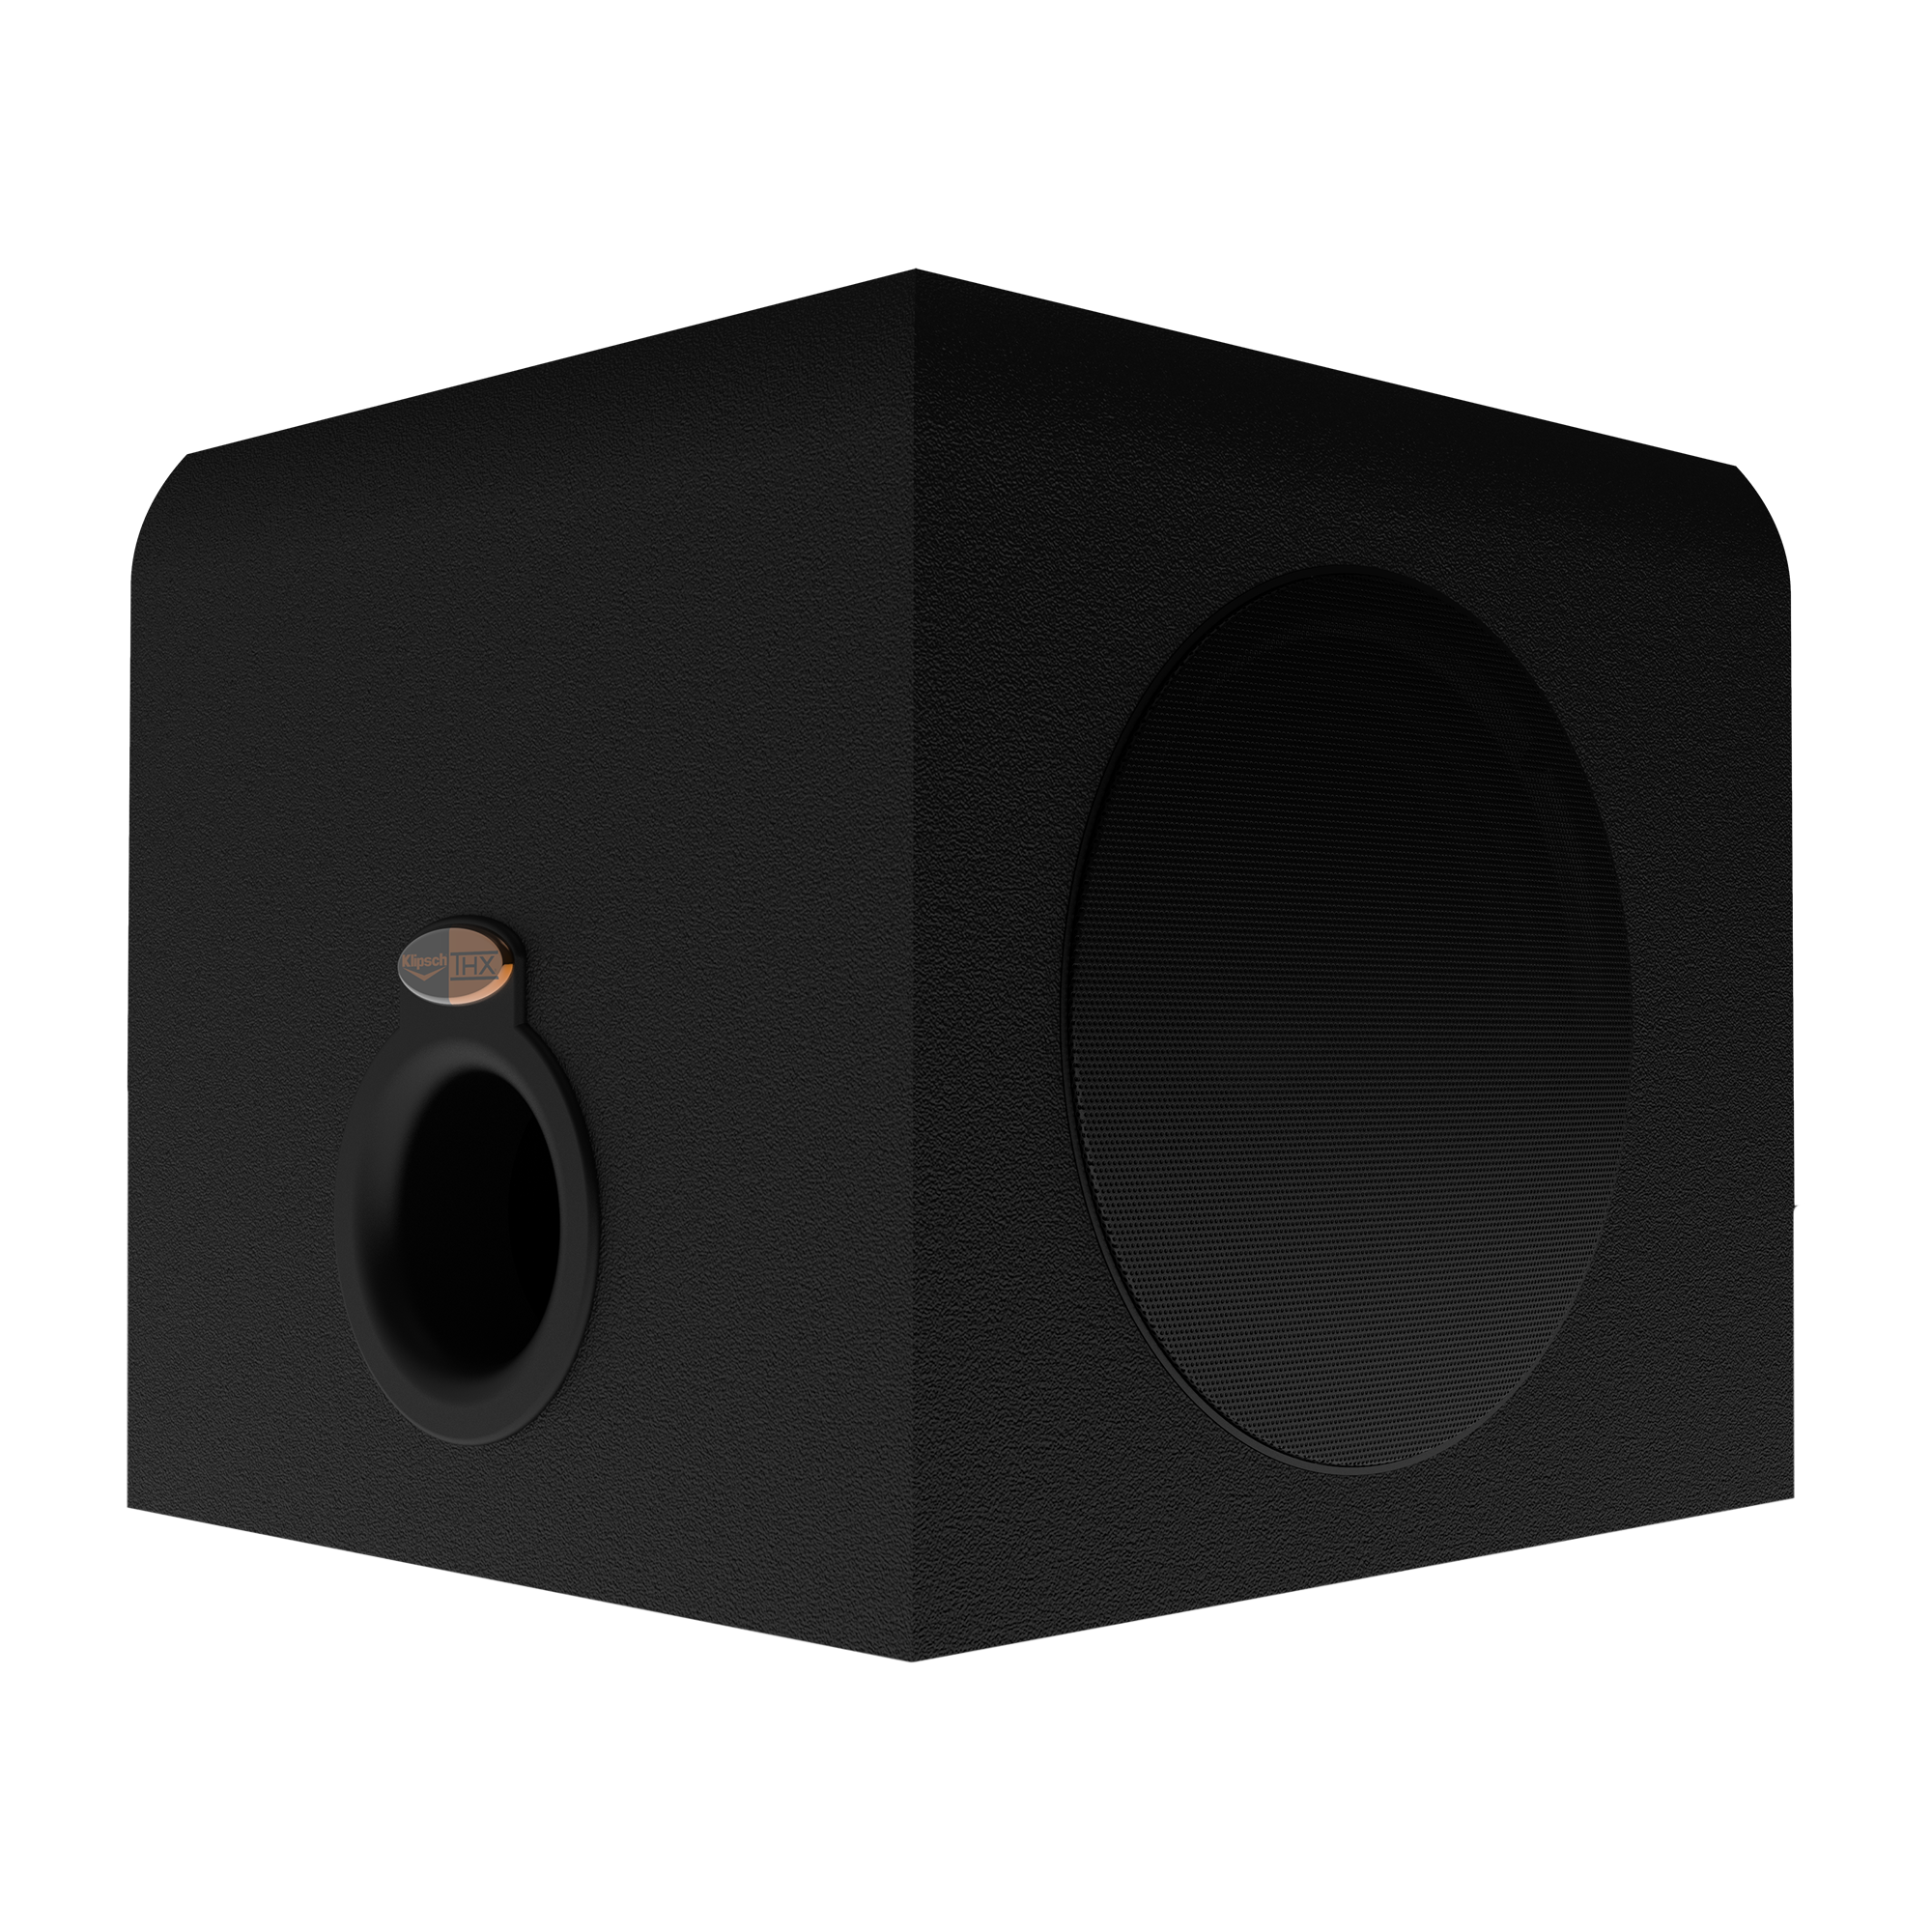 klipsch promedia 2.1 no sound one speaker